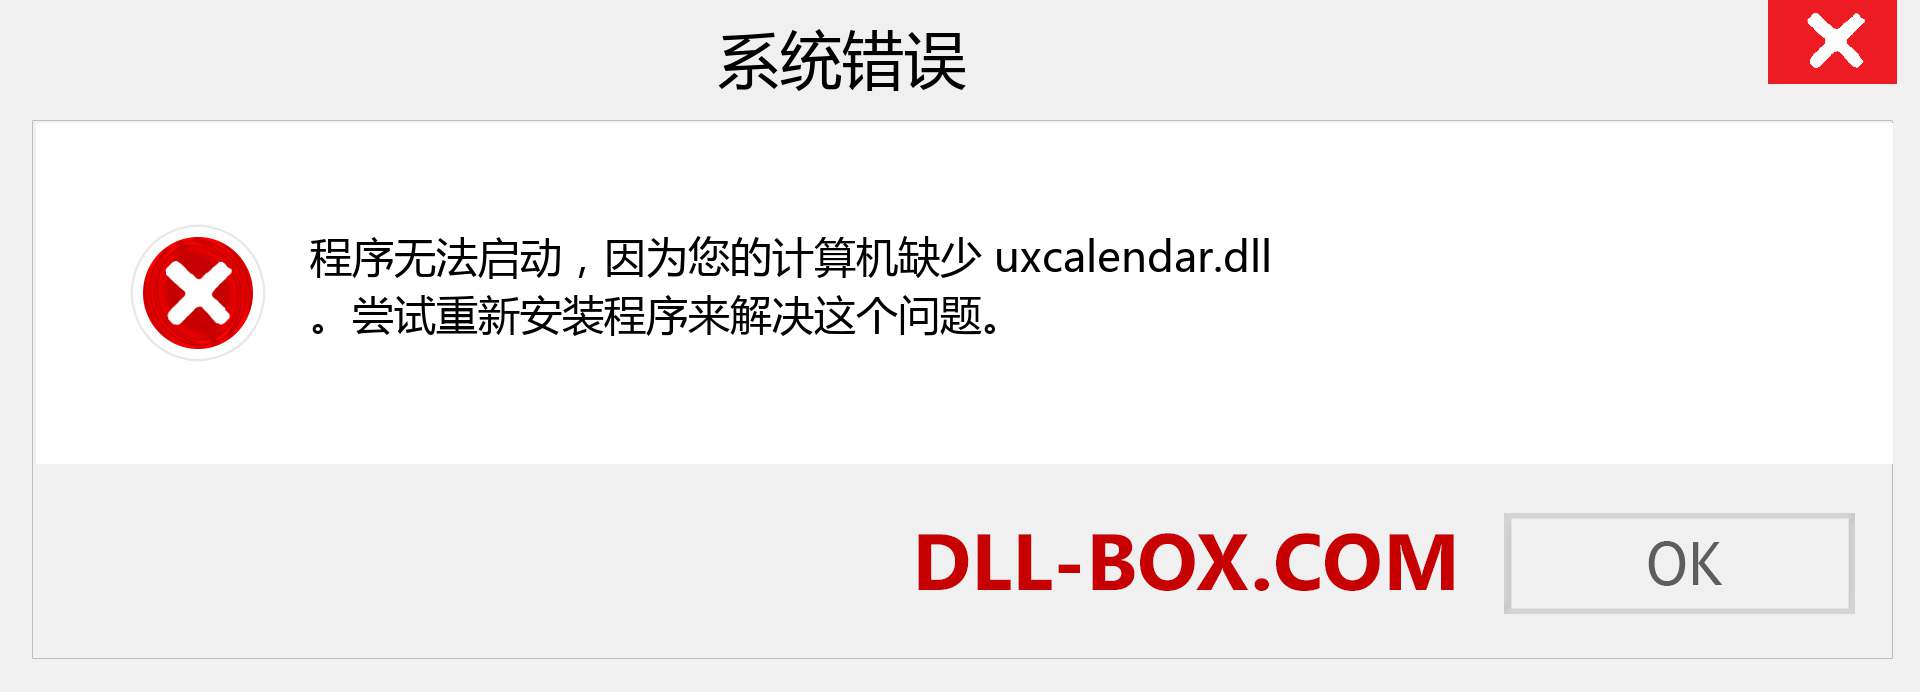 uxcalendar.dll 文件丢失？。 适用于 Windows 7、8、10 的下载 - 修复 Windows、照片、图像上的 uxcalendar dll 丢失错误